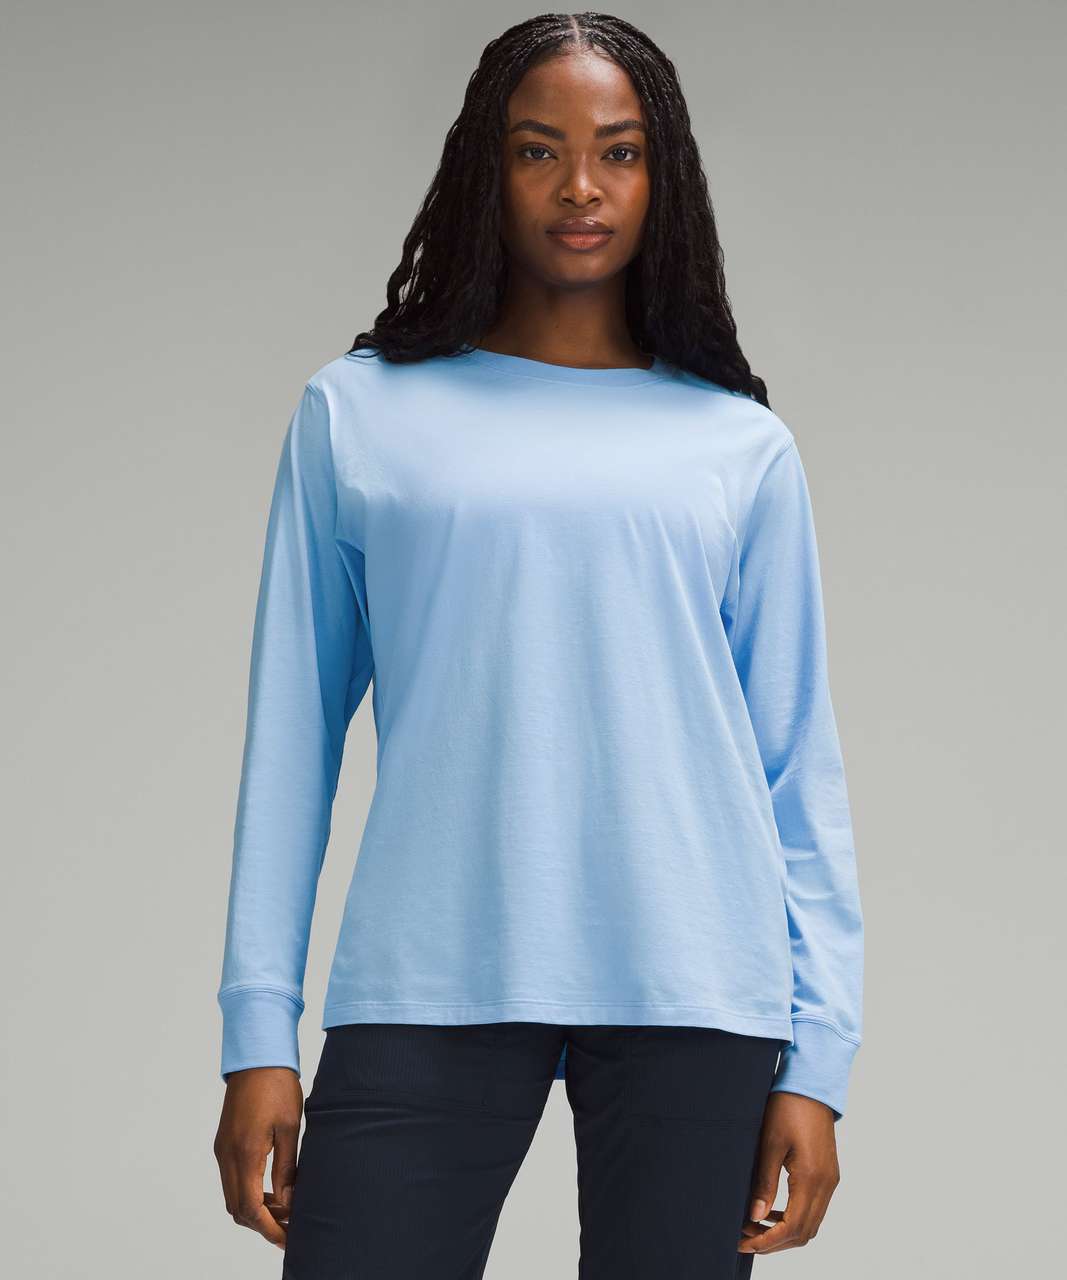 Lululemon All Yours Long-Sleeve Shirt - Aero Blue